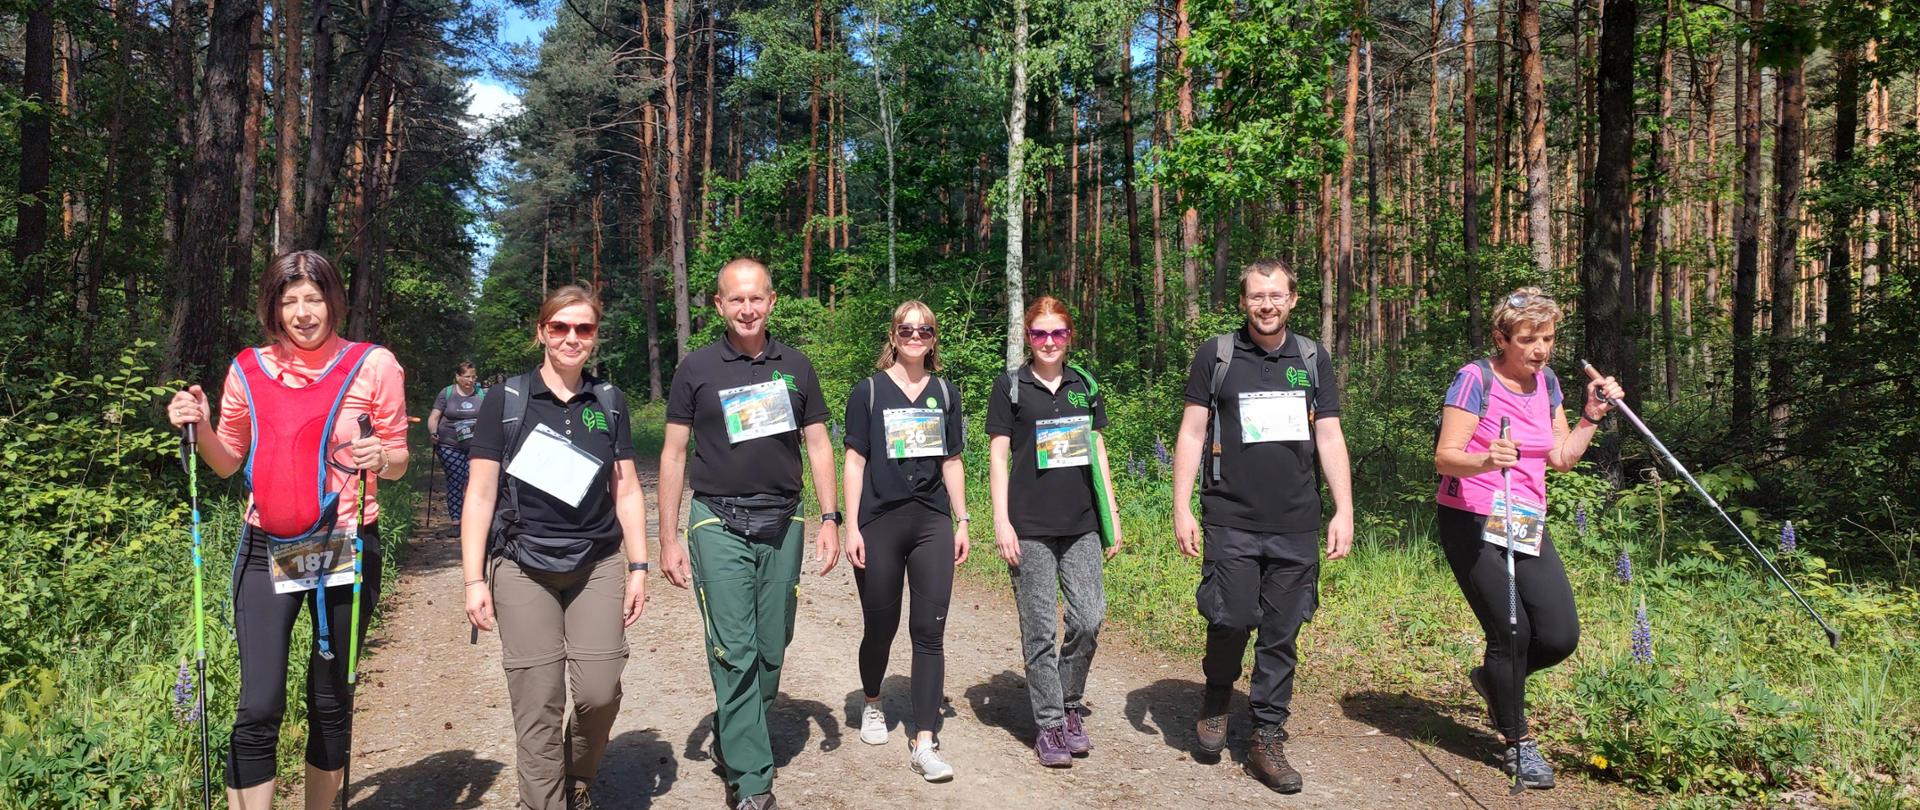 pięć osób w czarnych koszulach i dwie kobiety z kijkami nordic walking w trakcie spaceru przez las